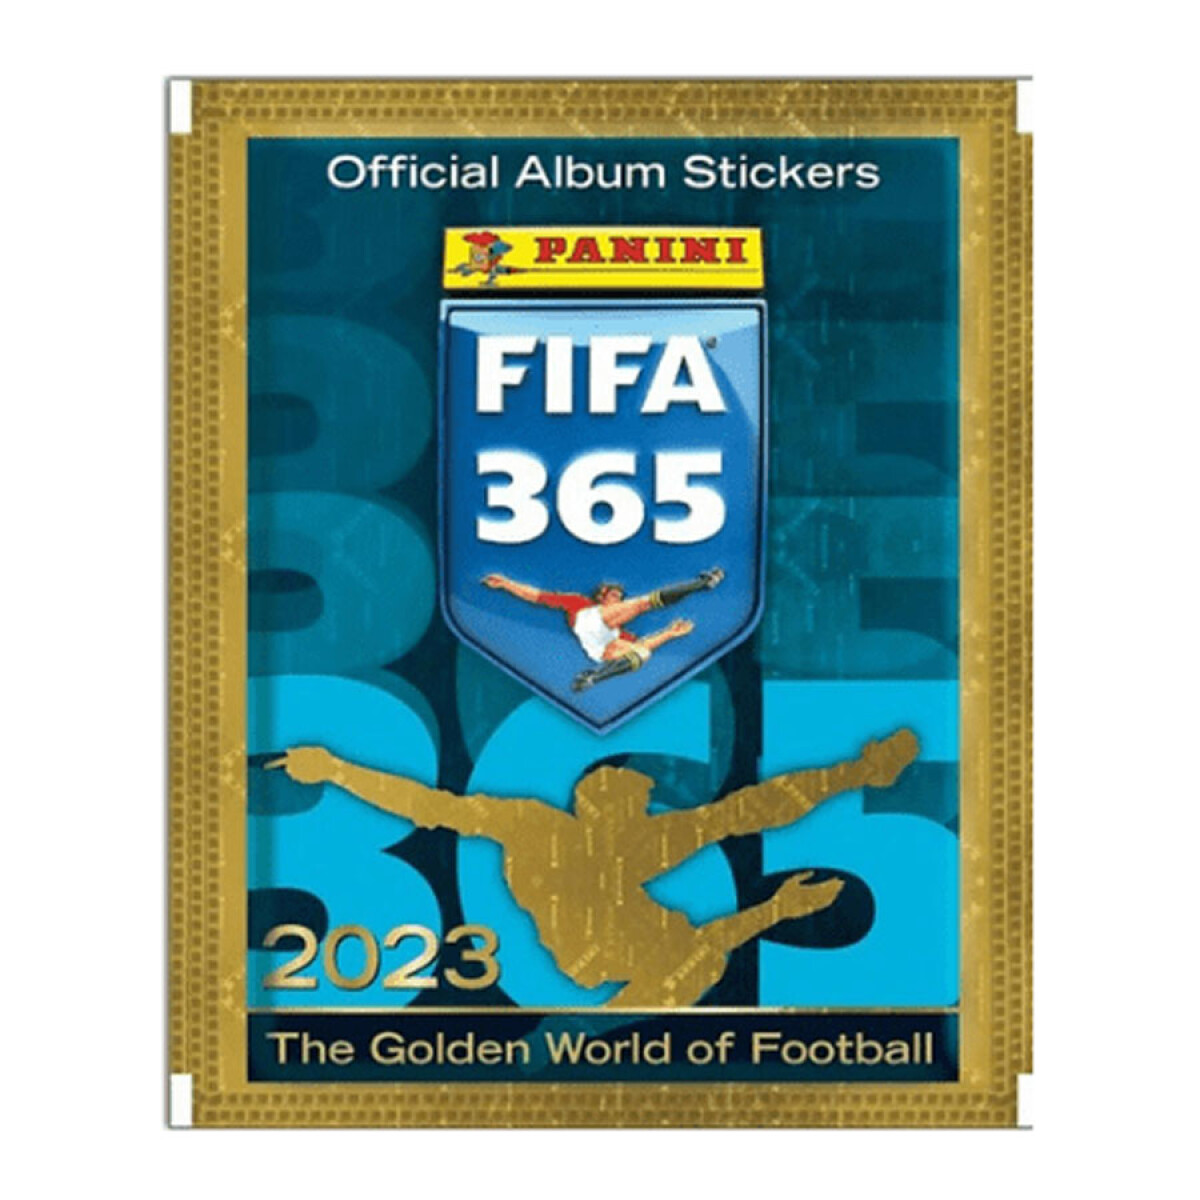 Sobre de figuritas de FIFA 365 2023 • Panini 